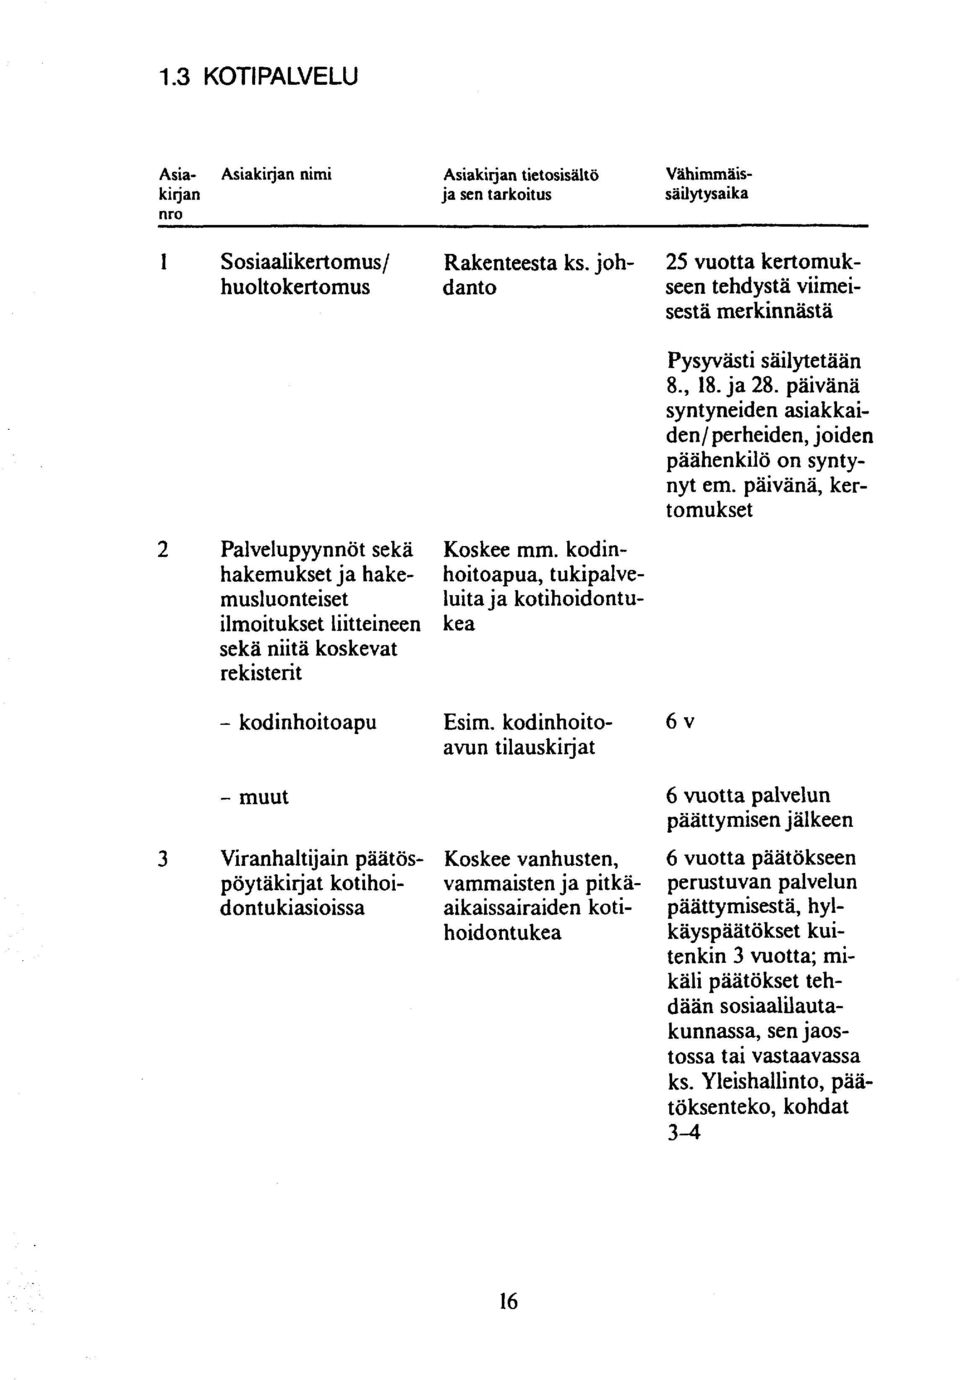 kodinhoitoapu - muut 3 Viran hal t ij ain päätöspöytäkirjat kotihoid ont u kiasioissa Koskee mm. kodinhoitoapua, tukipalveluita ja kotihoidontukea Esim.